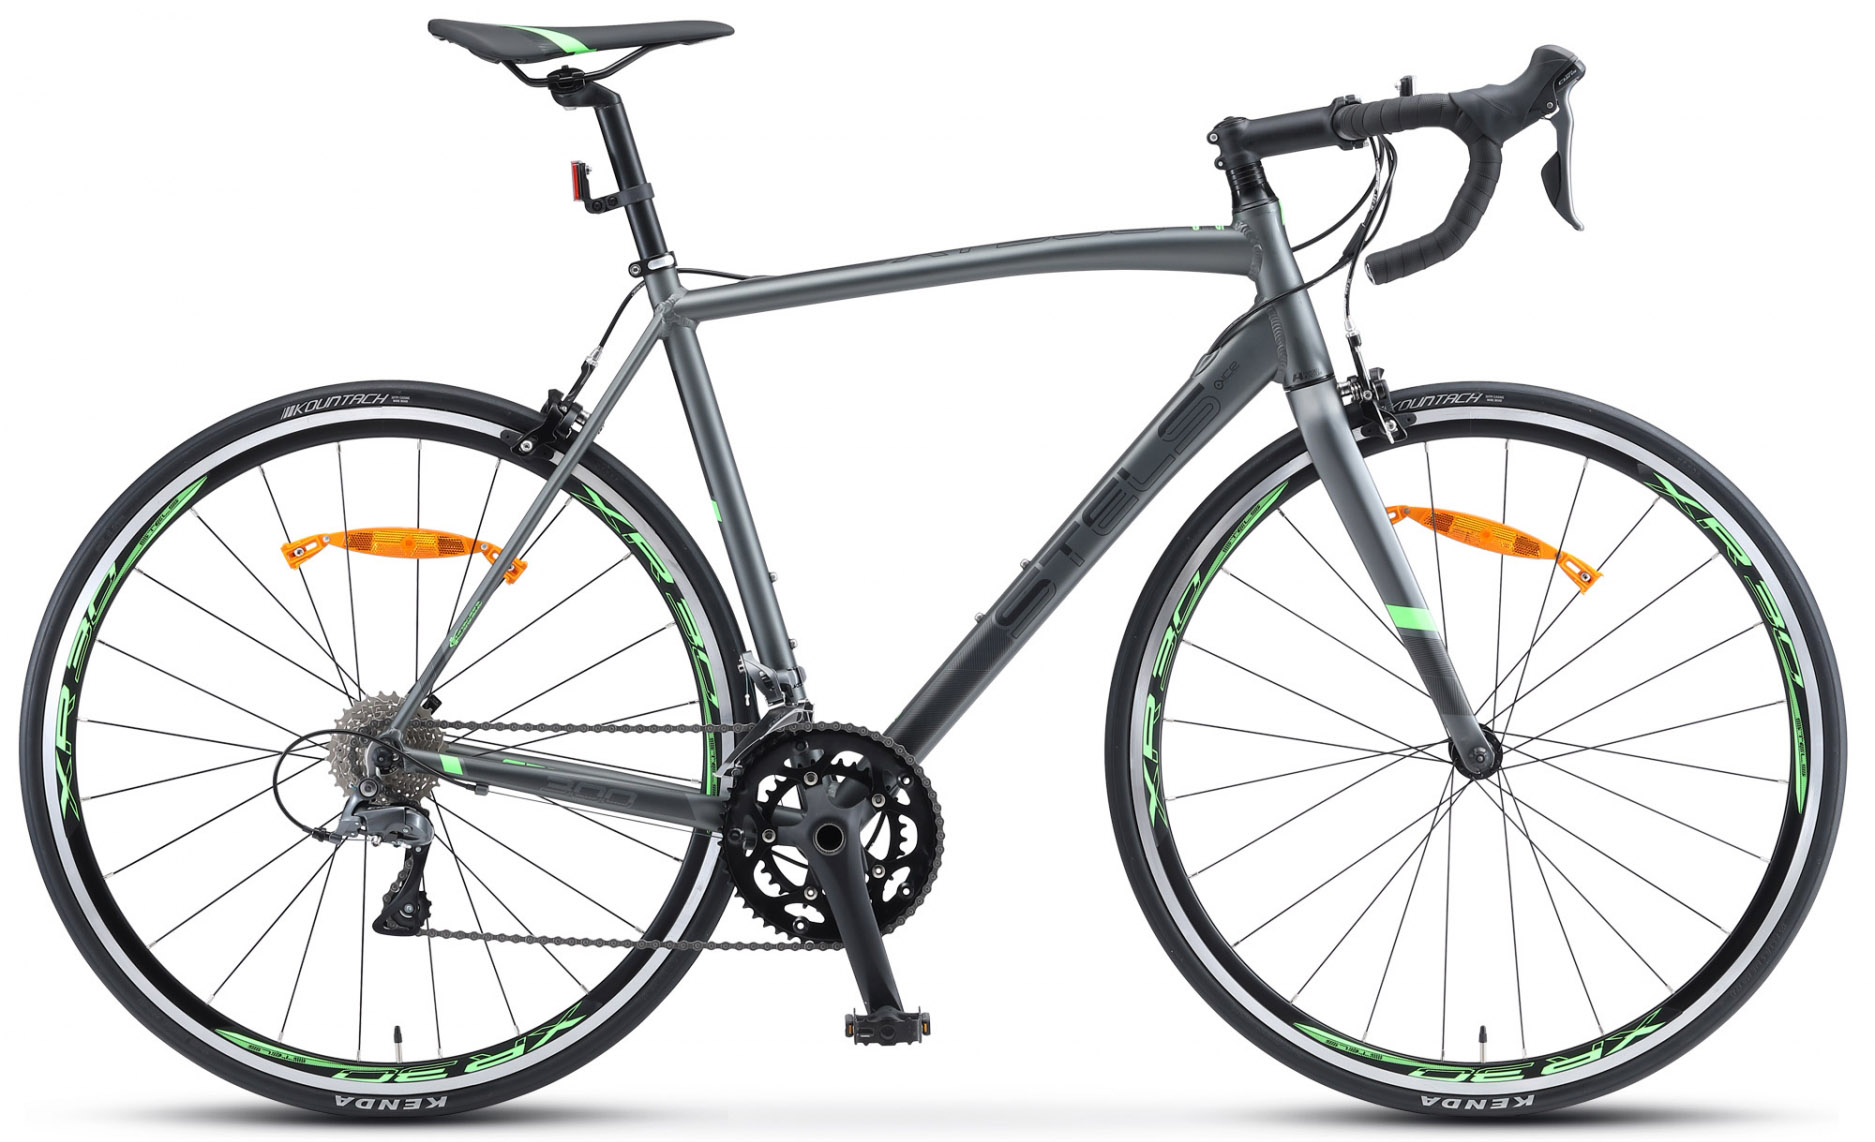  Отзывы о Шоссейном велосипеде Stels XT 300 V010 2020